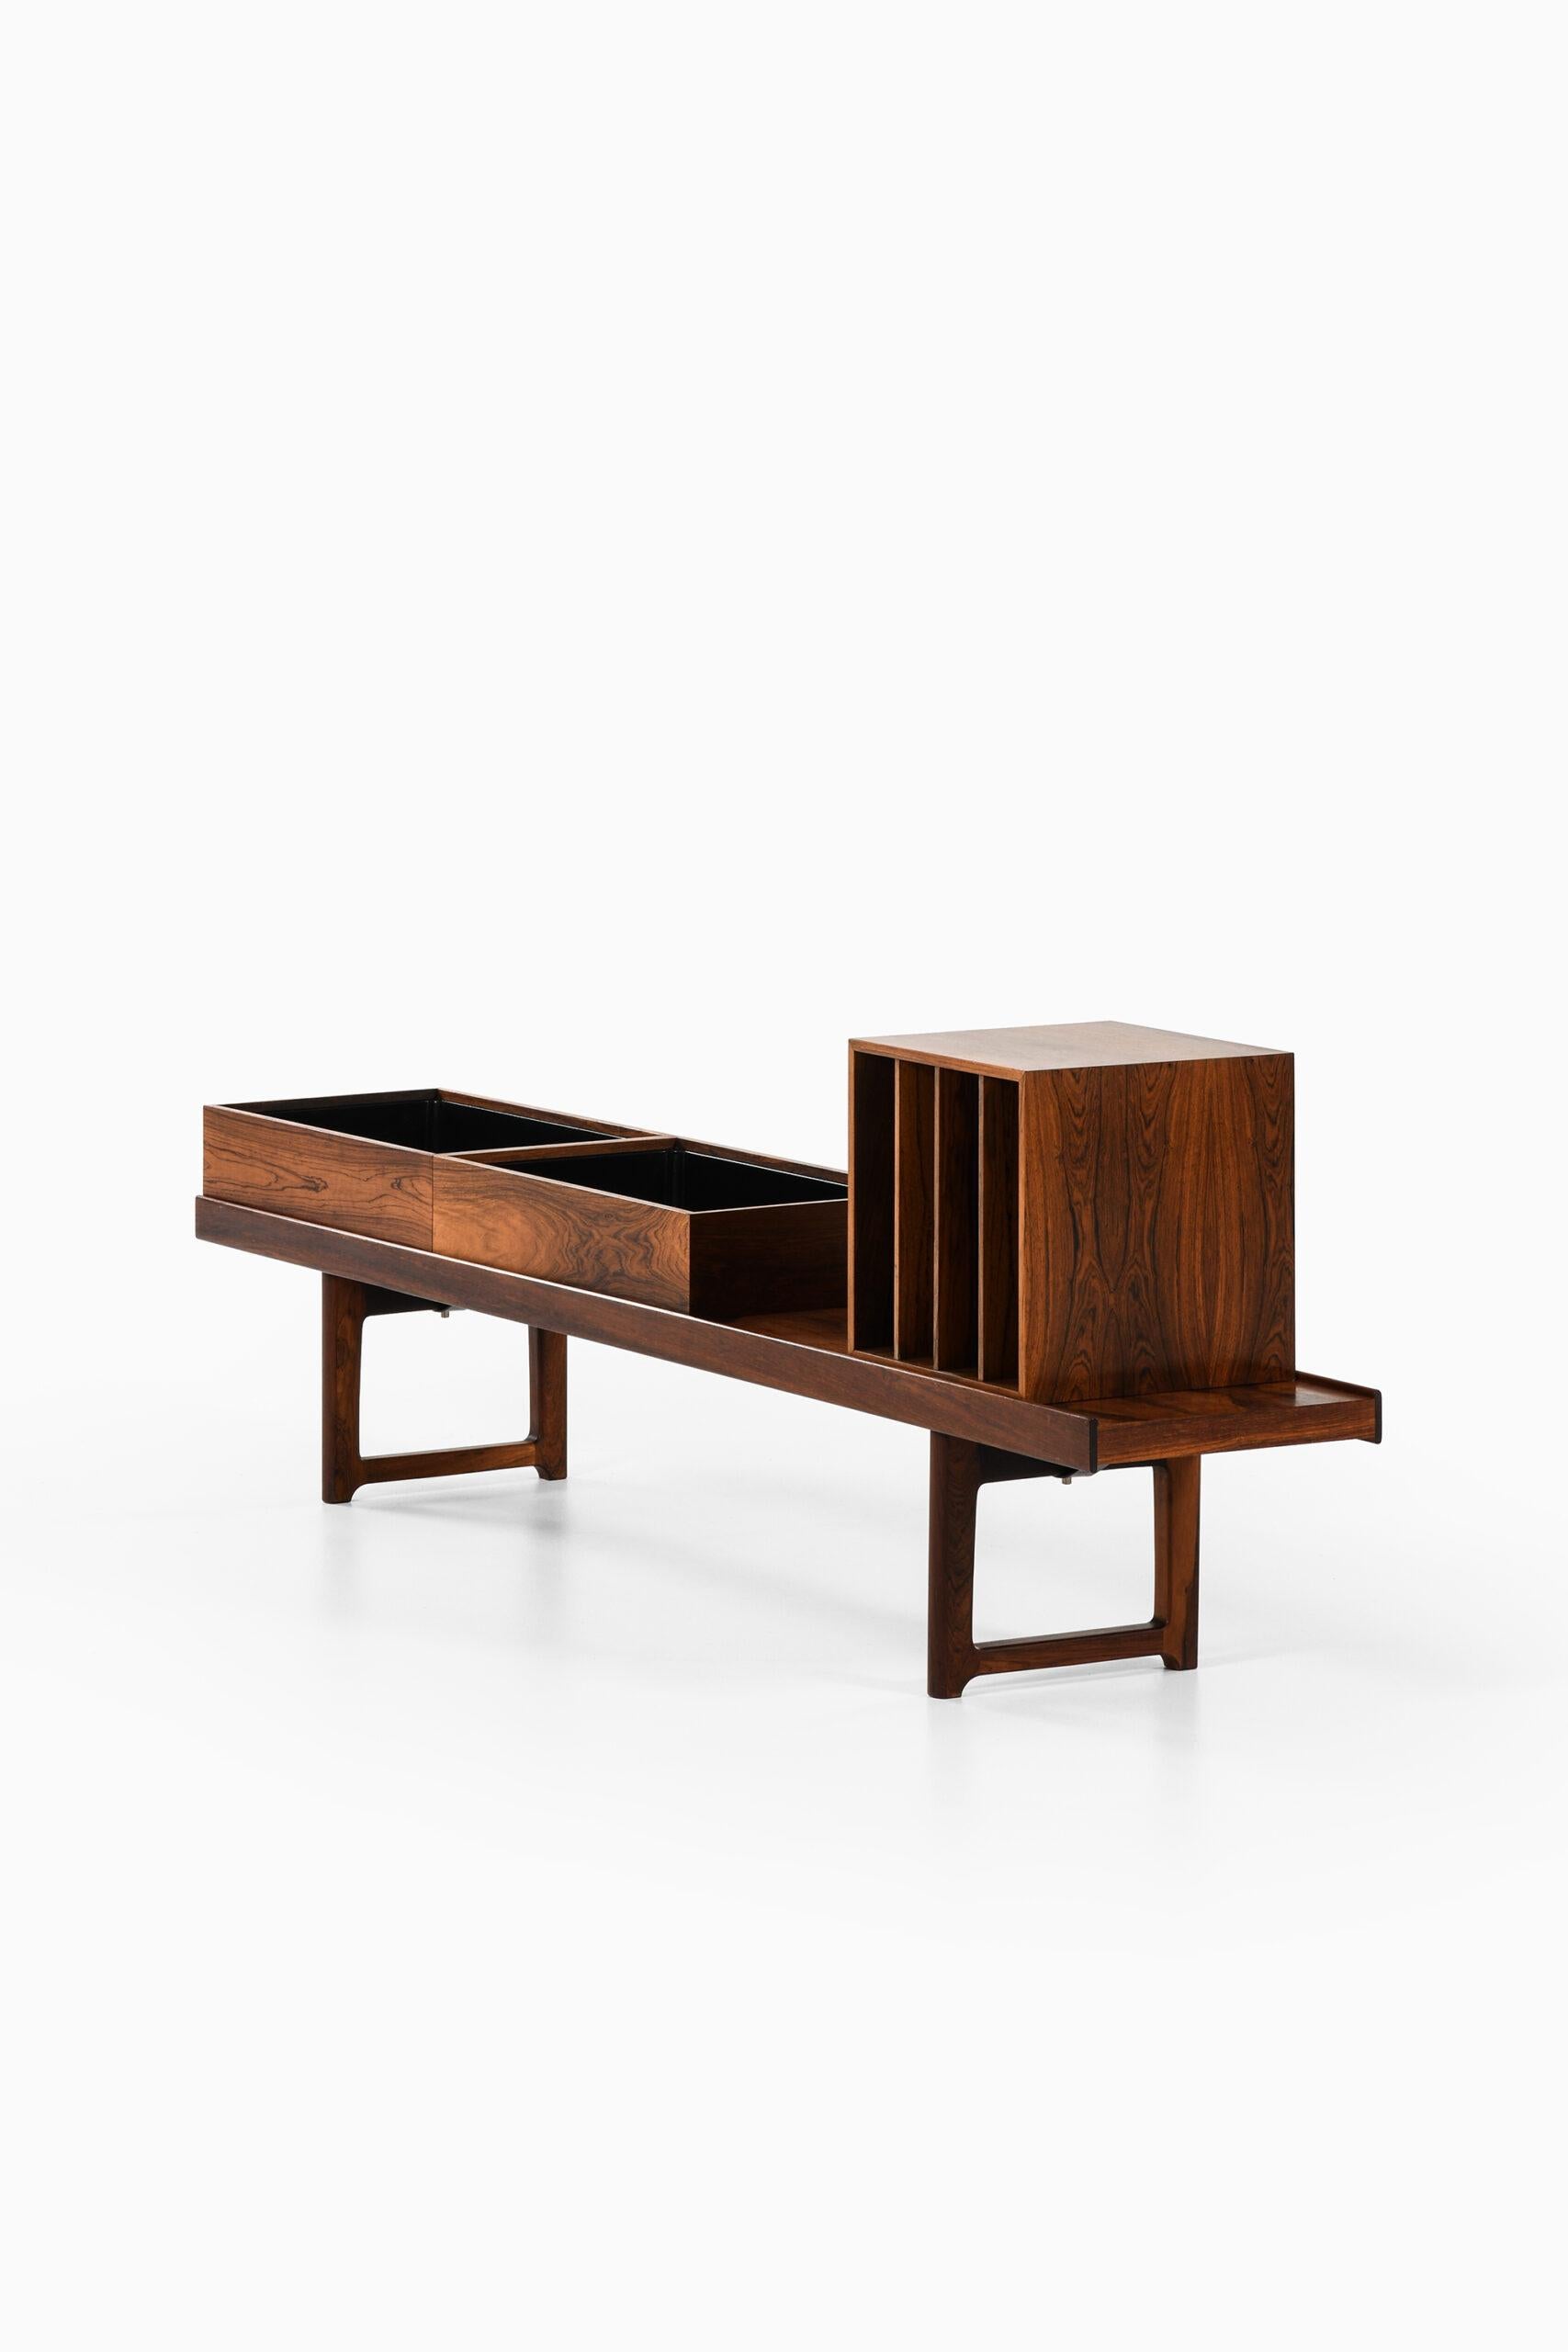 Mid-20th Century Torbjørn Afdal Bench / Side Table Model Krobo by Mellemstrands Møbelfabrik For Sale